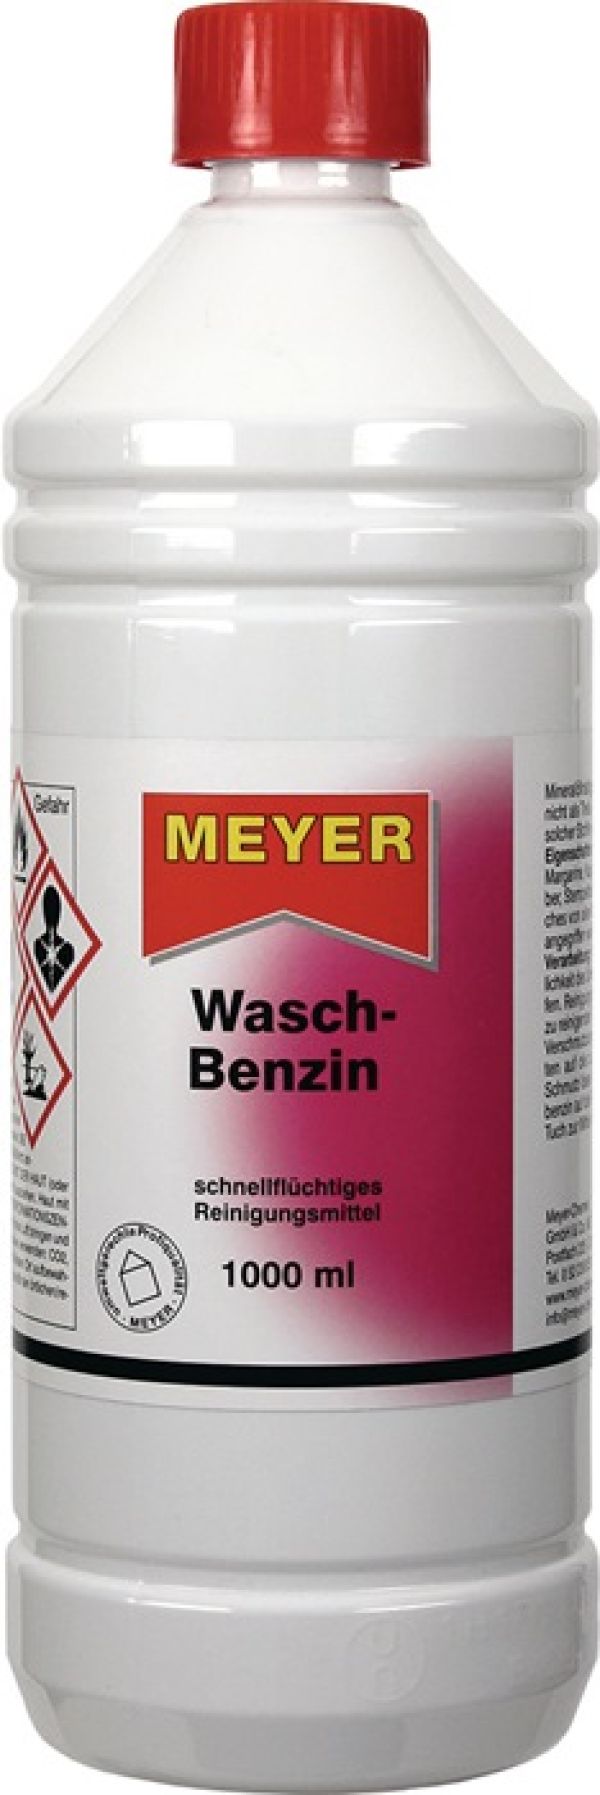 Waschbenzin MEYER